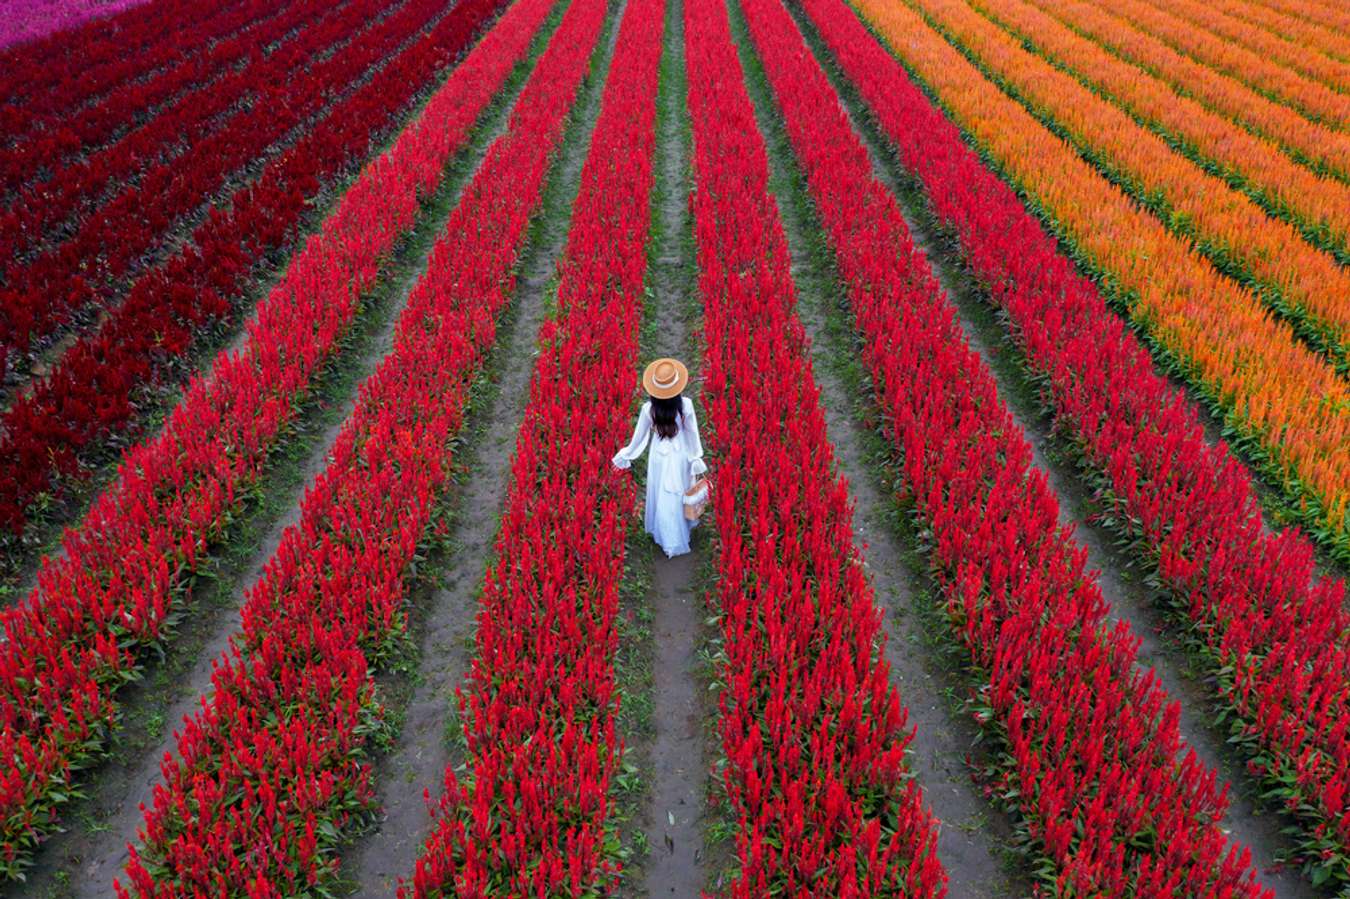 จุดชมดอกไม้ทั่วไทย-I love flower farm